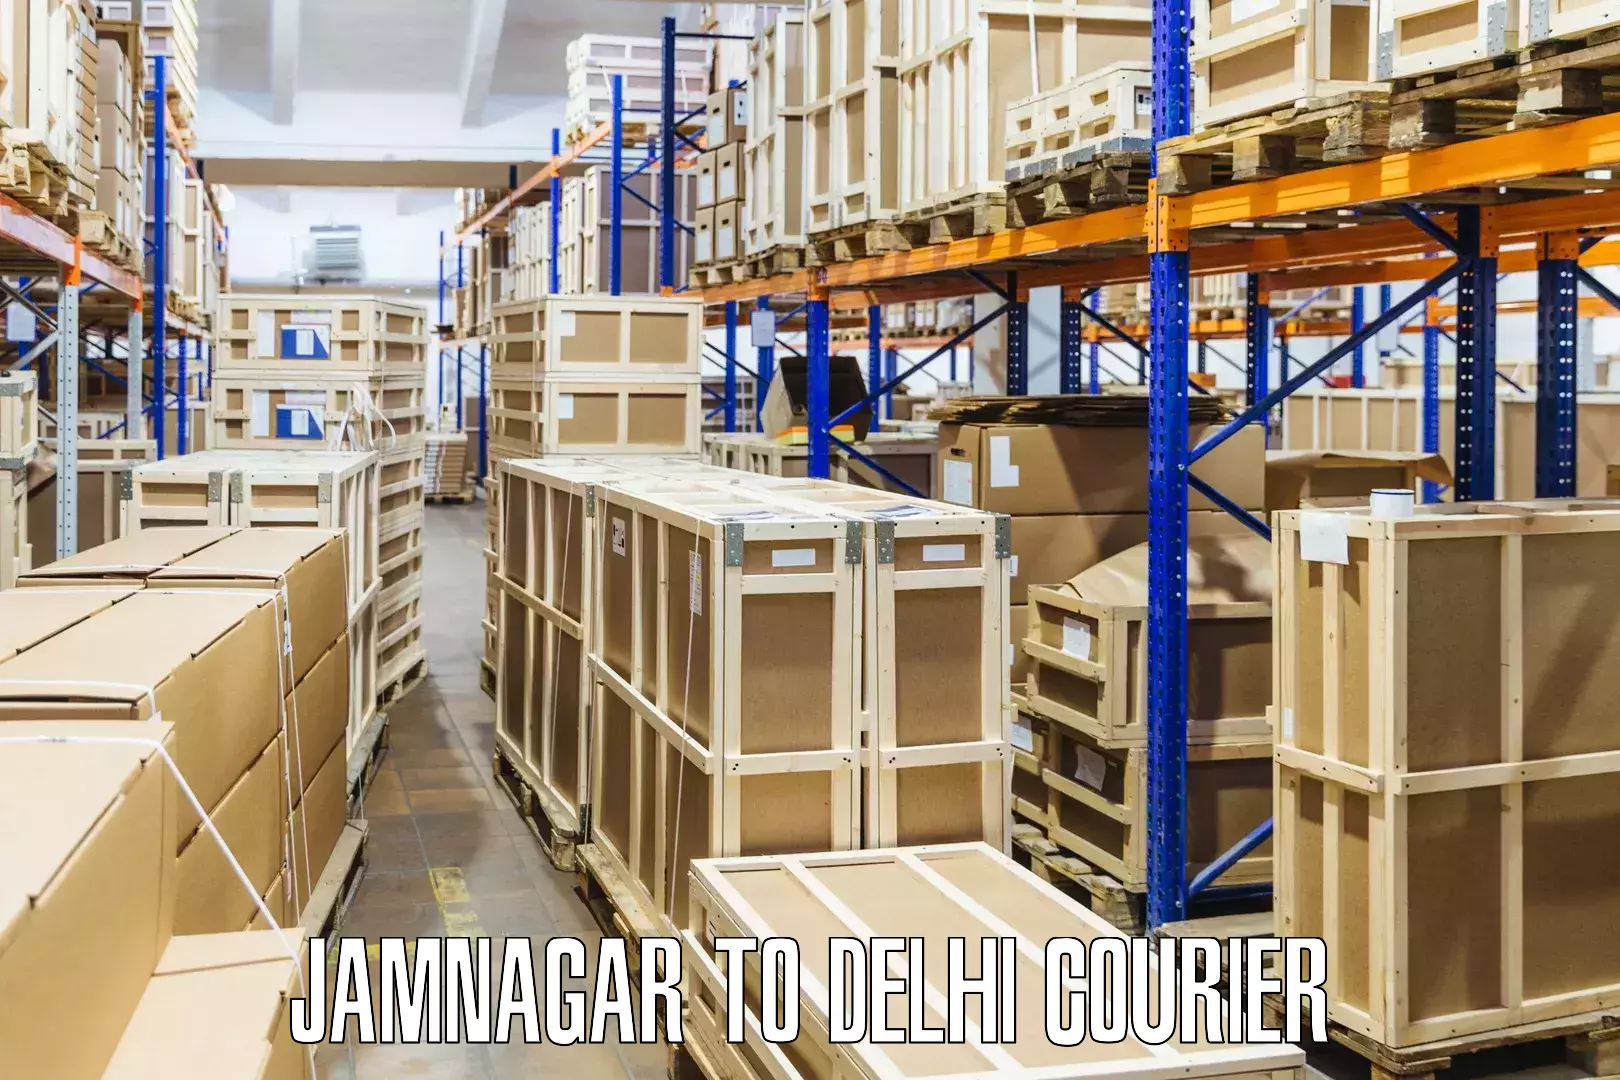 International parcel service Jamnagar to Delhi